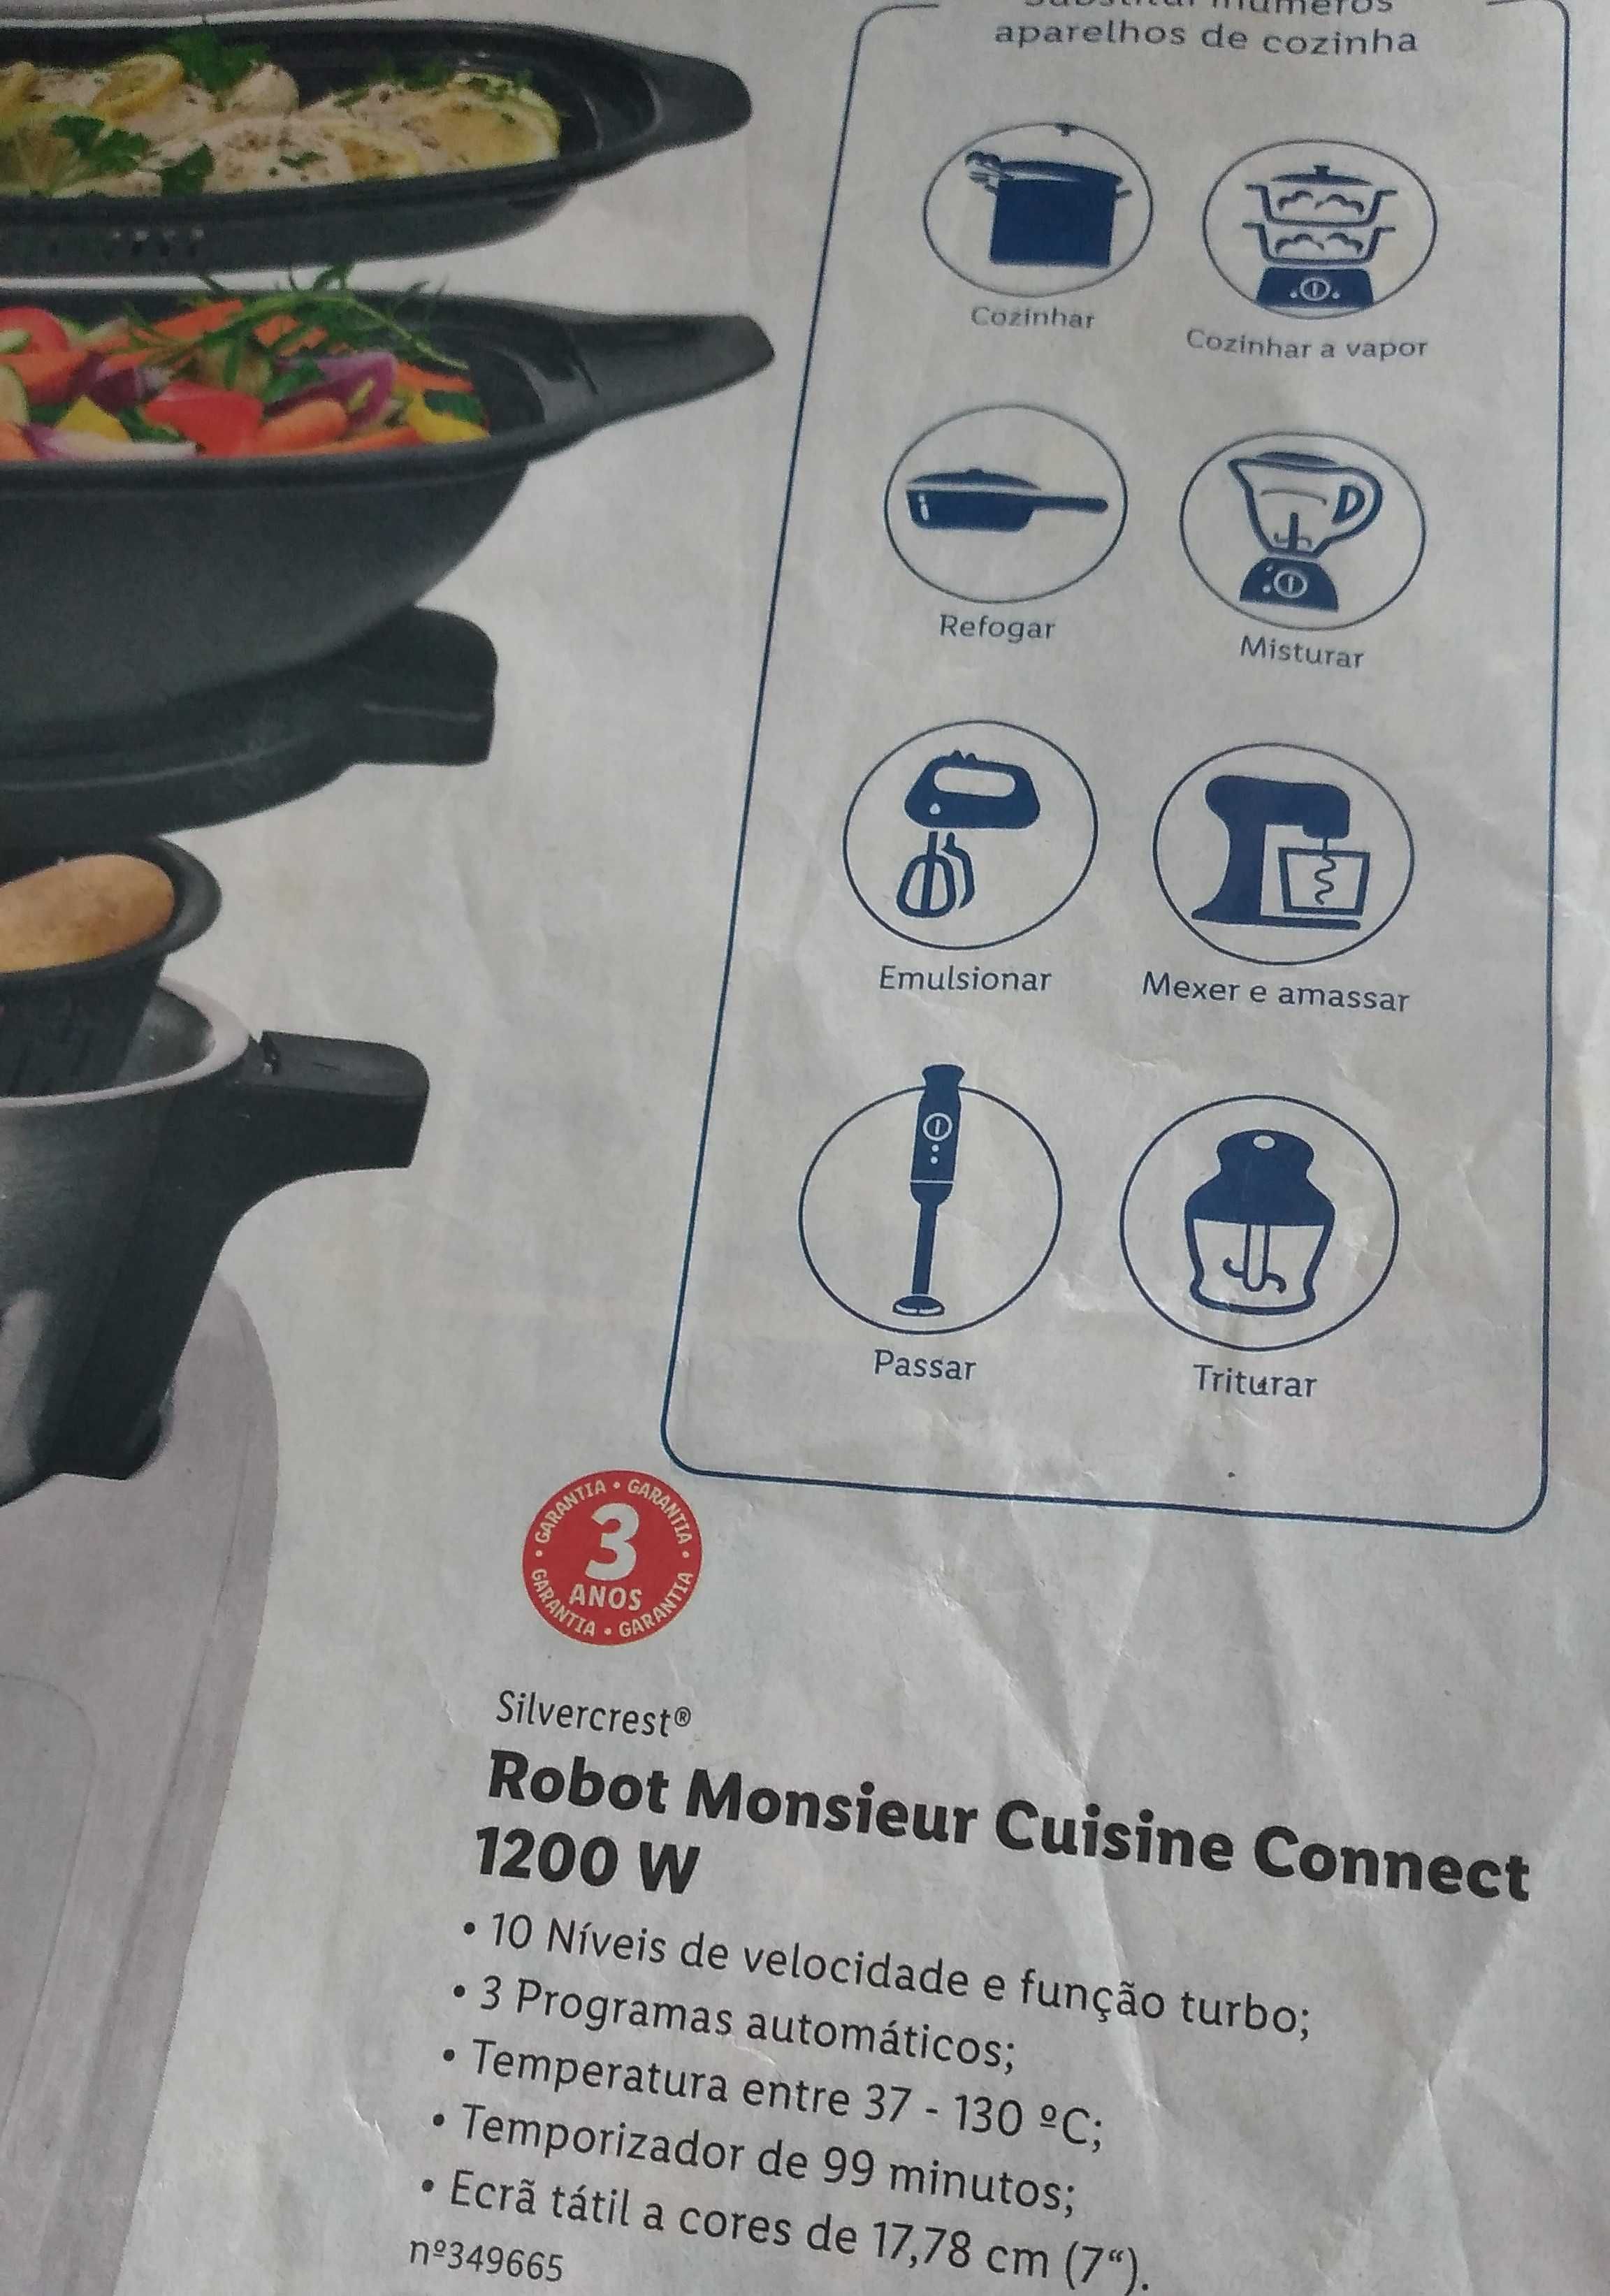 Robot de Cozinha - Monsieur Cuisine Connect (MCC - Lidl)